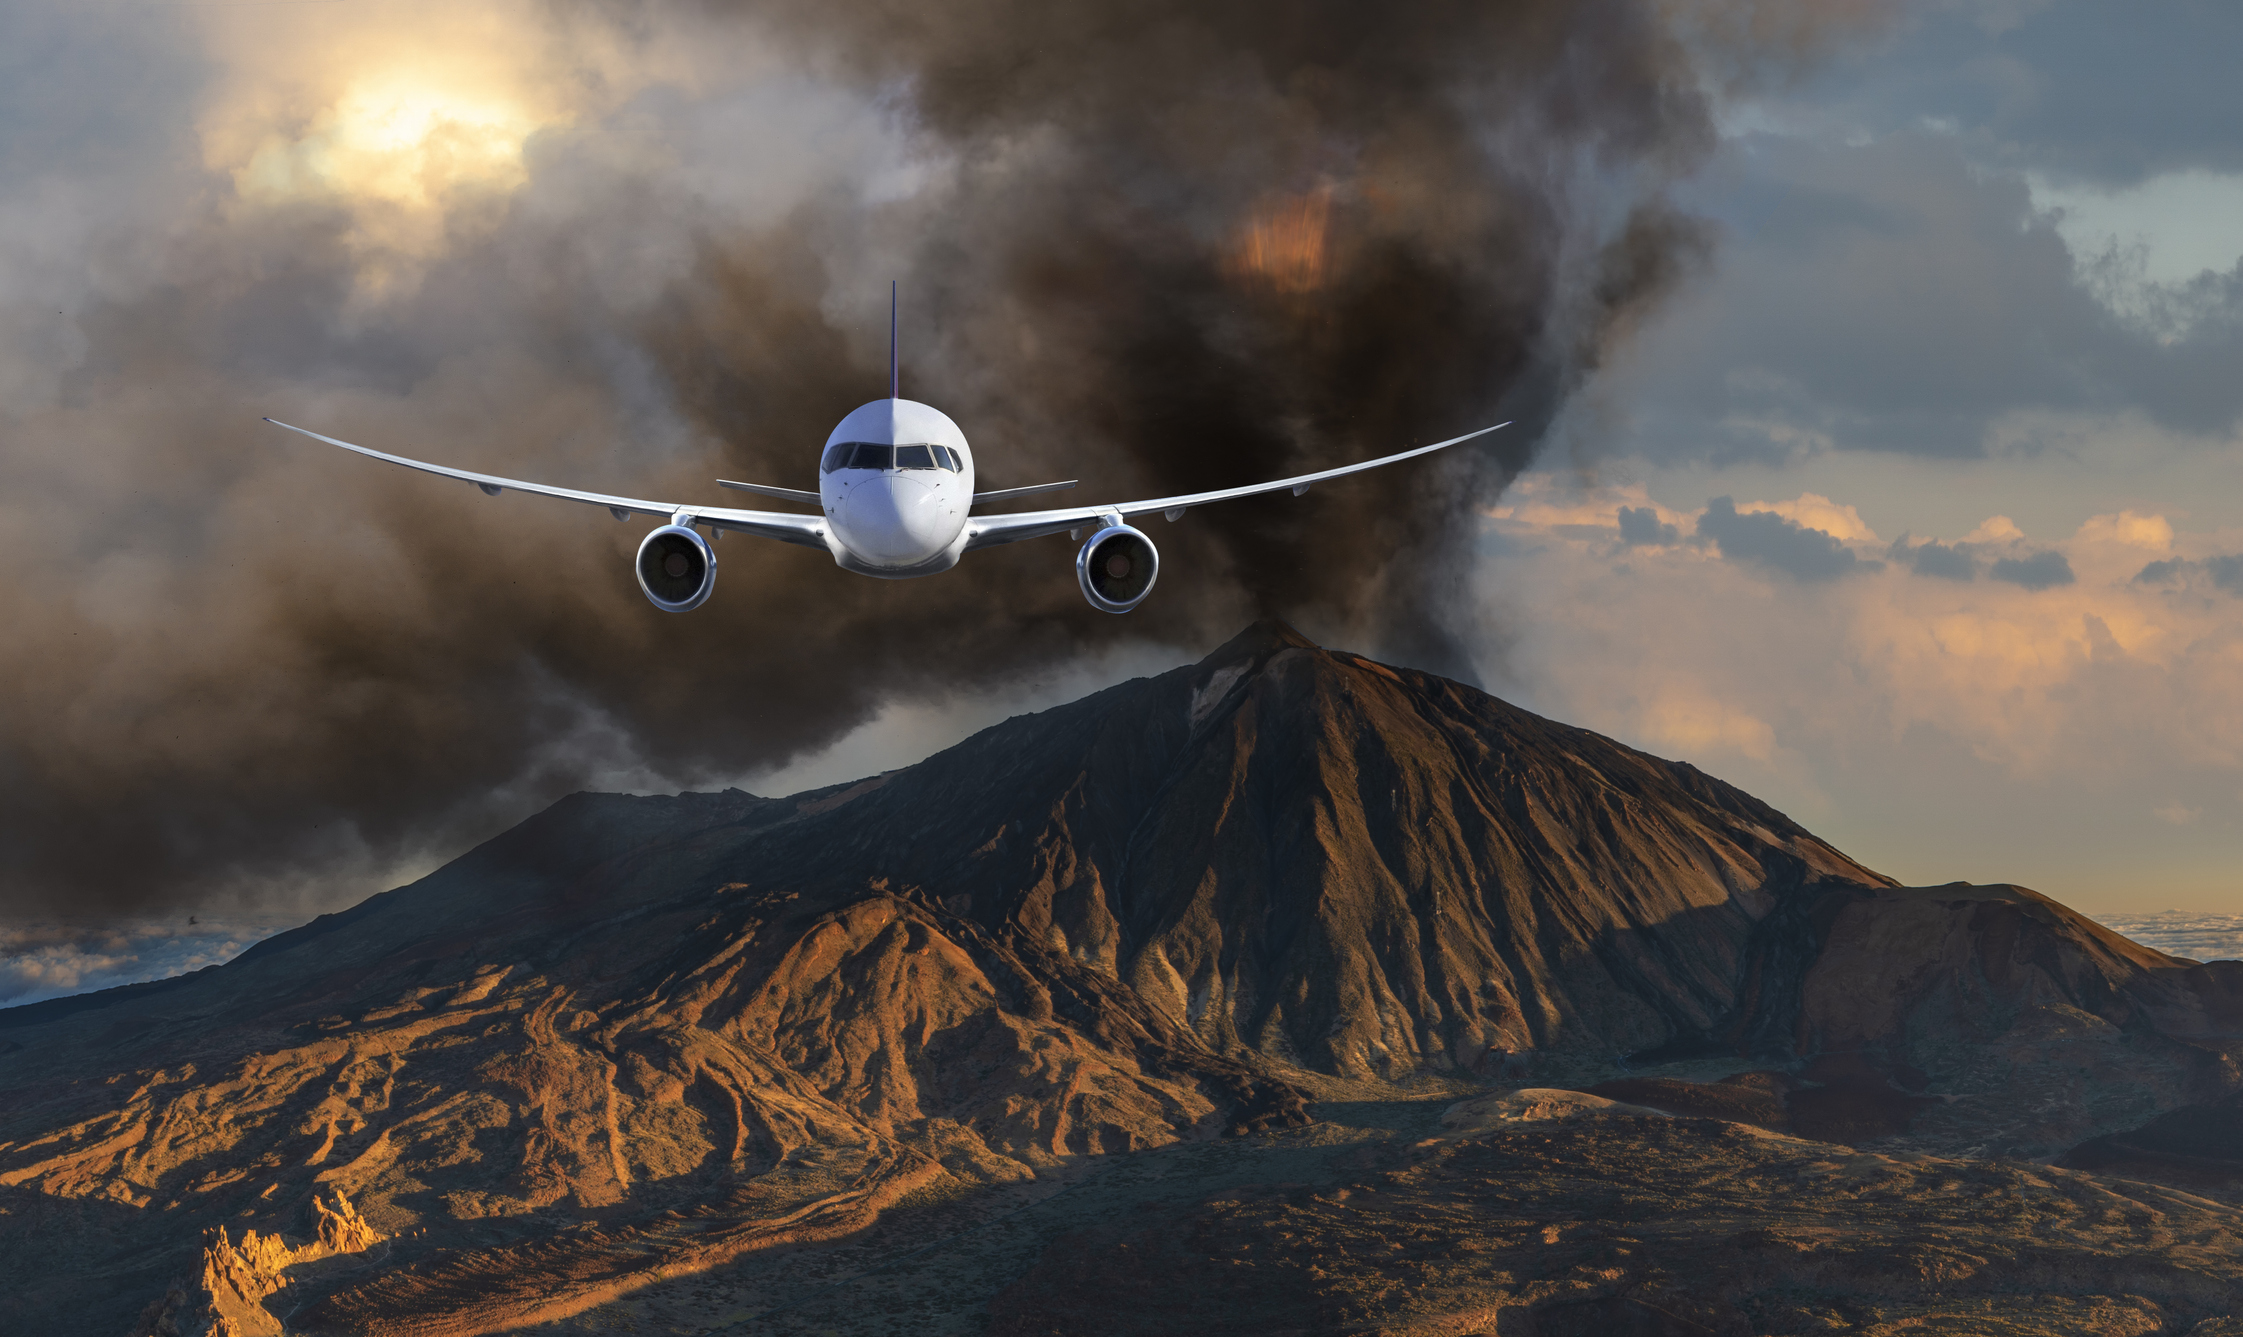 Een vliegtuig vliegt richting de camera, op de achtergrond is een aswolk en vulkaanlandschap te zien.